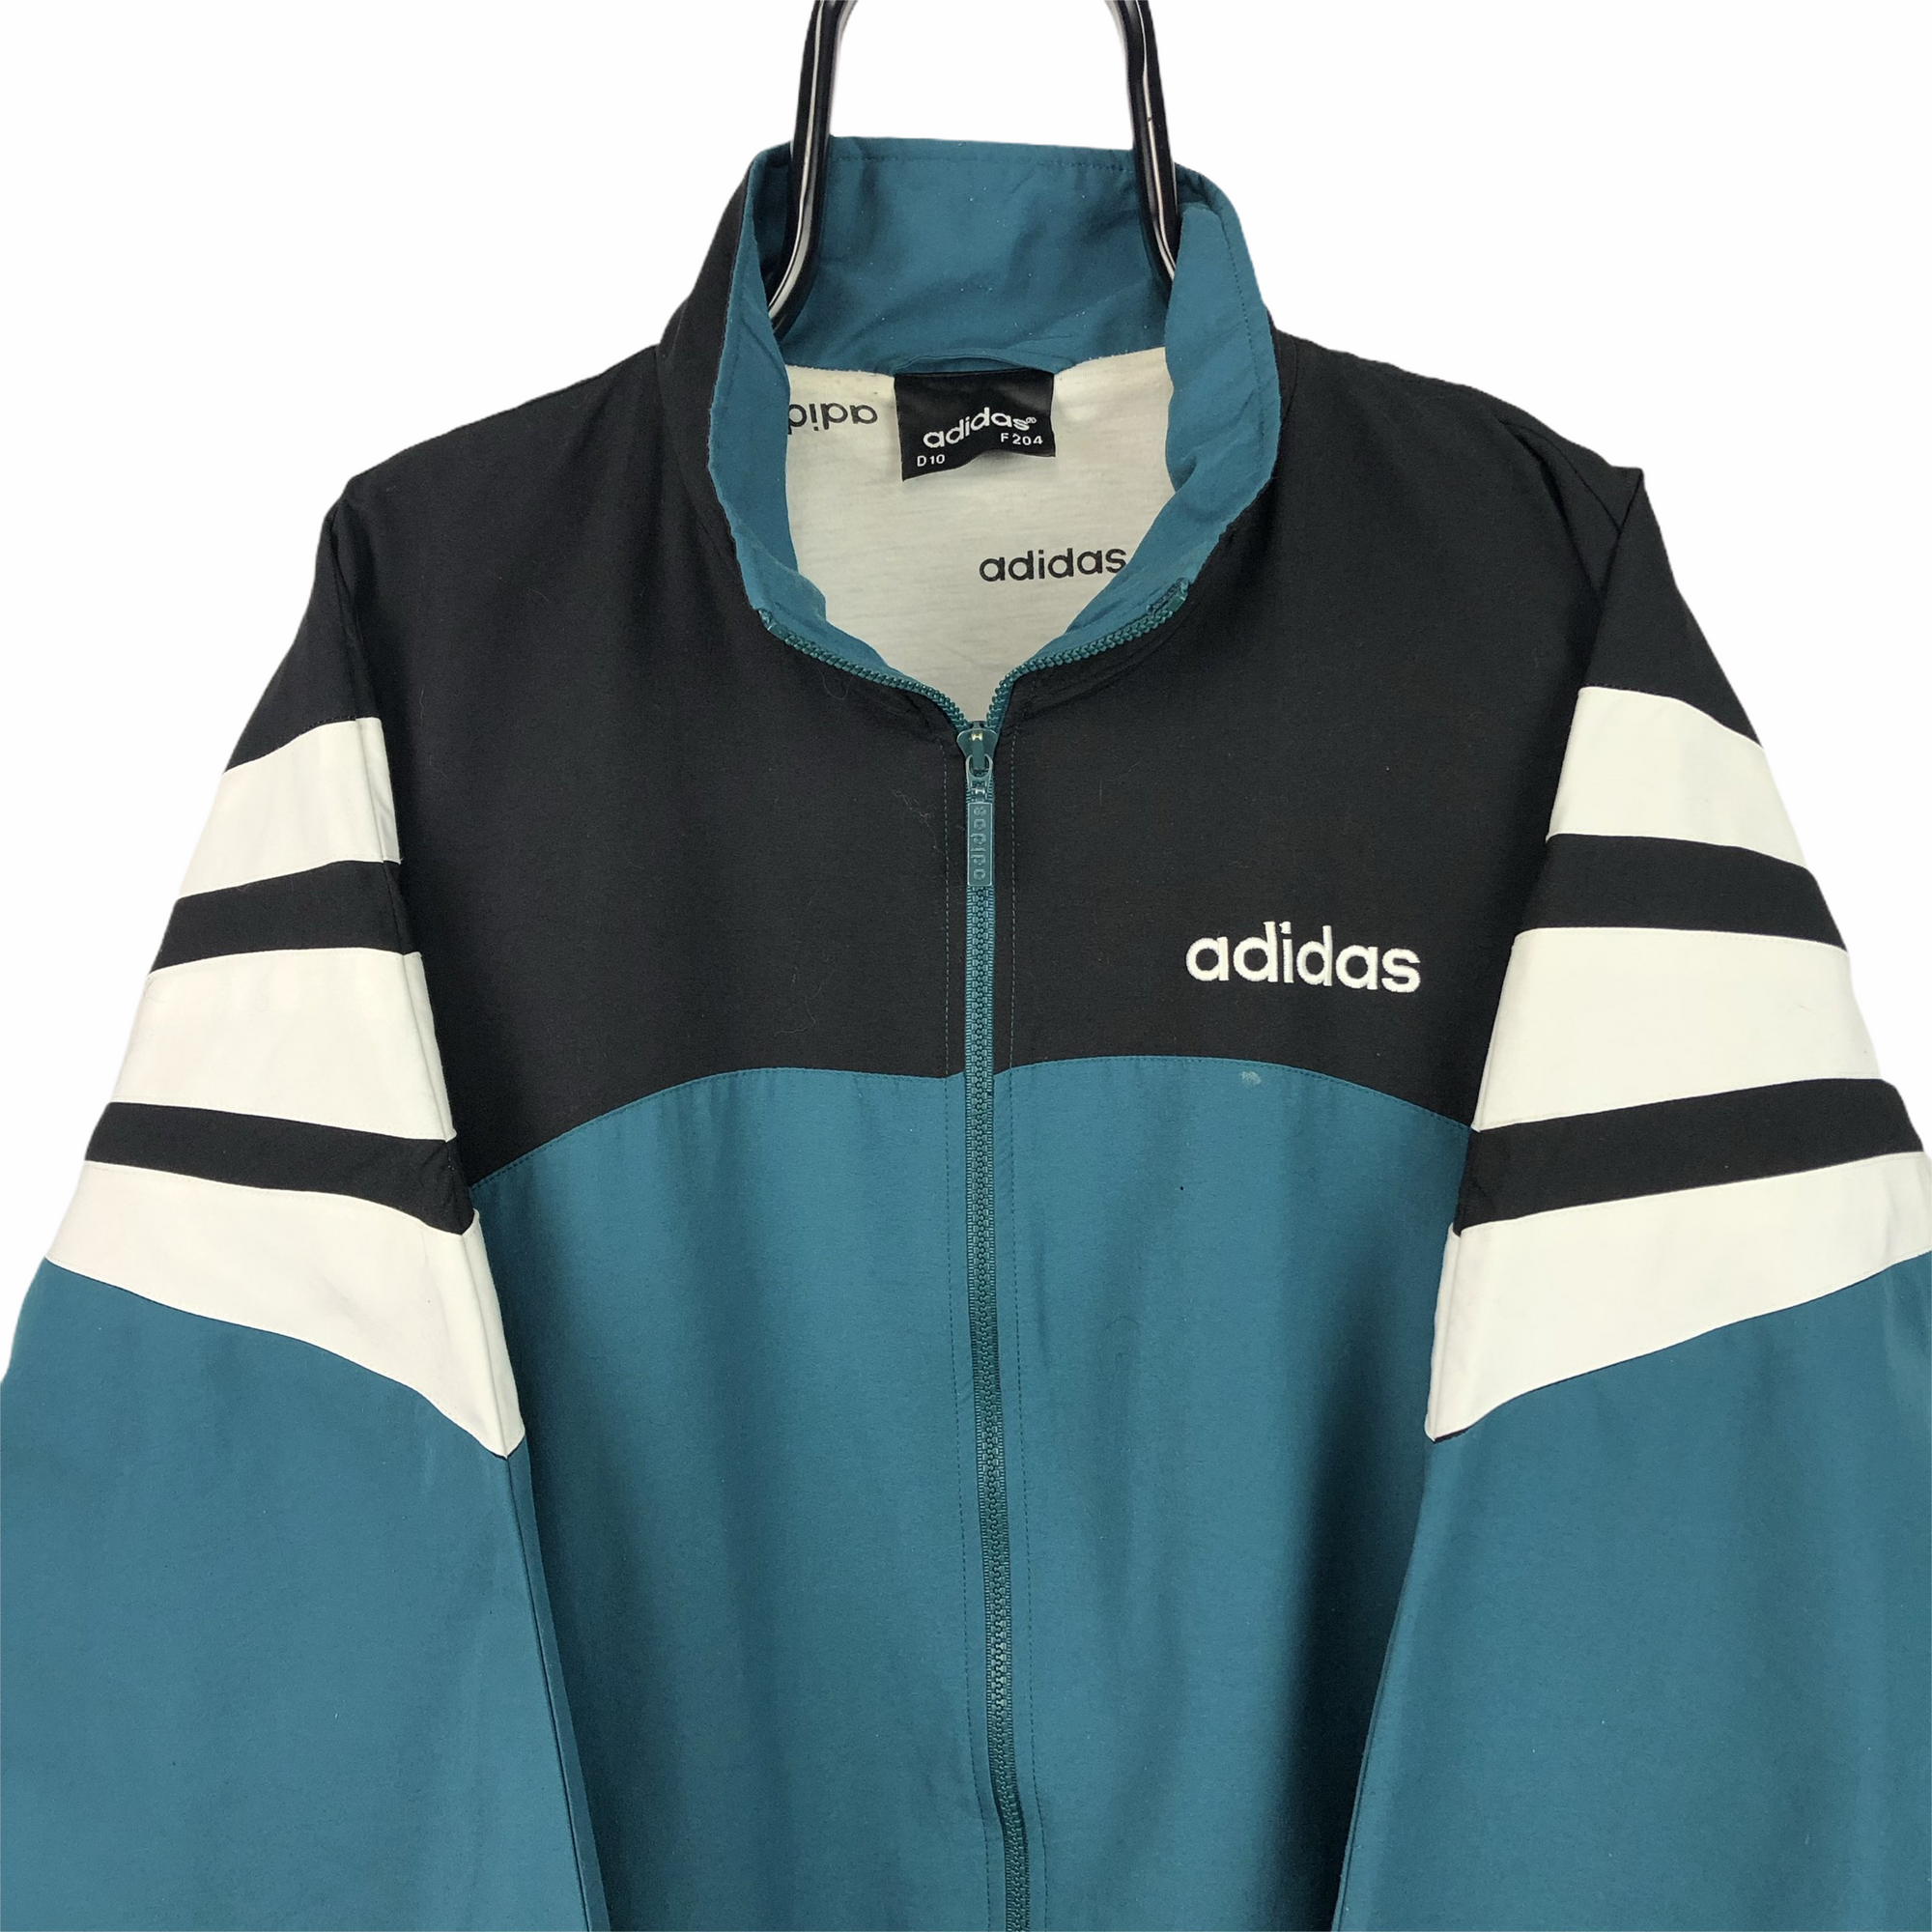 Vintage 90s Adidas Track Jacket - Men’s XXL/Women’s XXXL